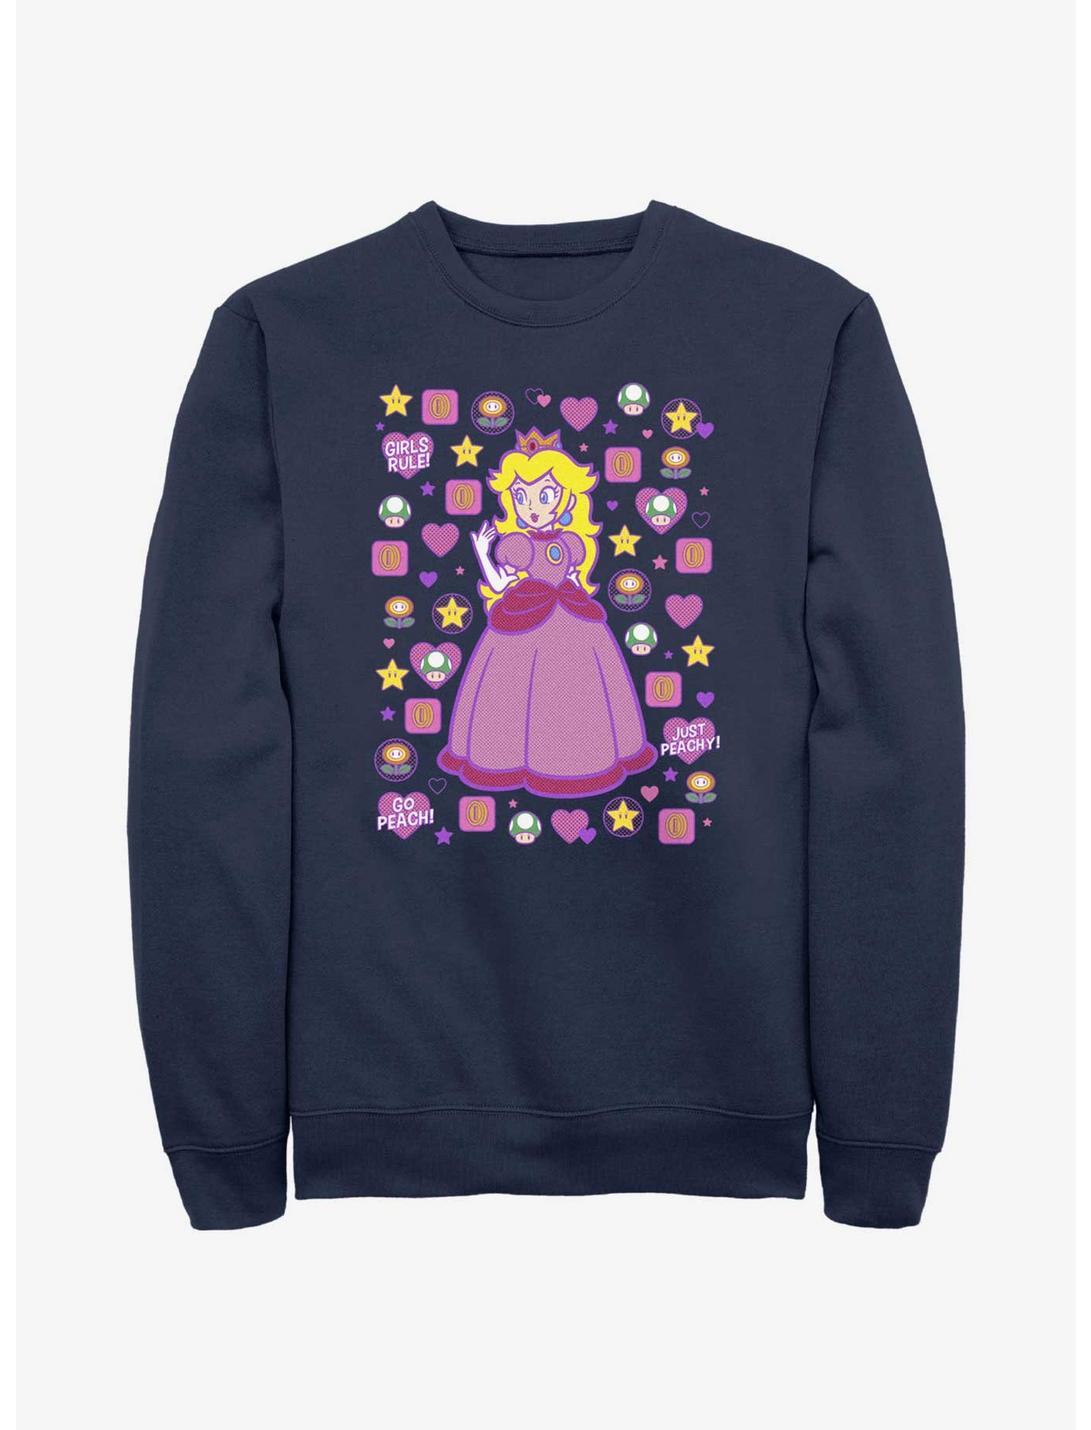 Mario Princess Peach Sweatshirt, NAVY, hi-res